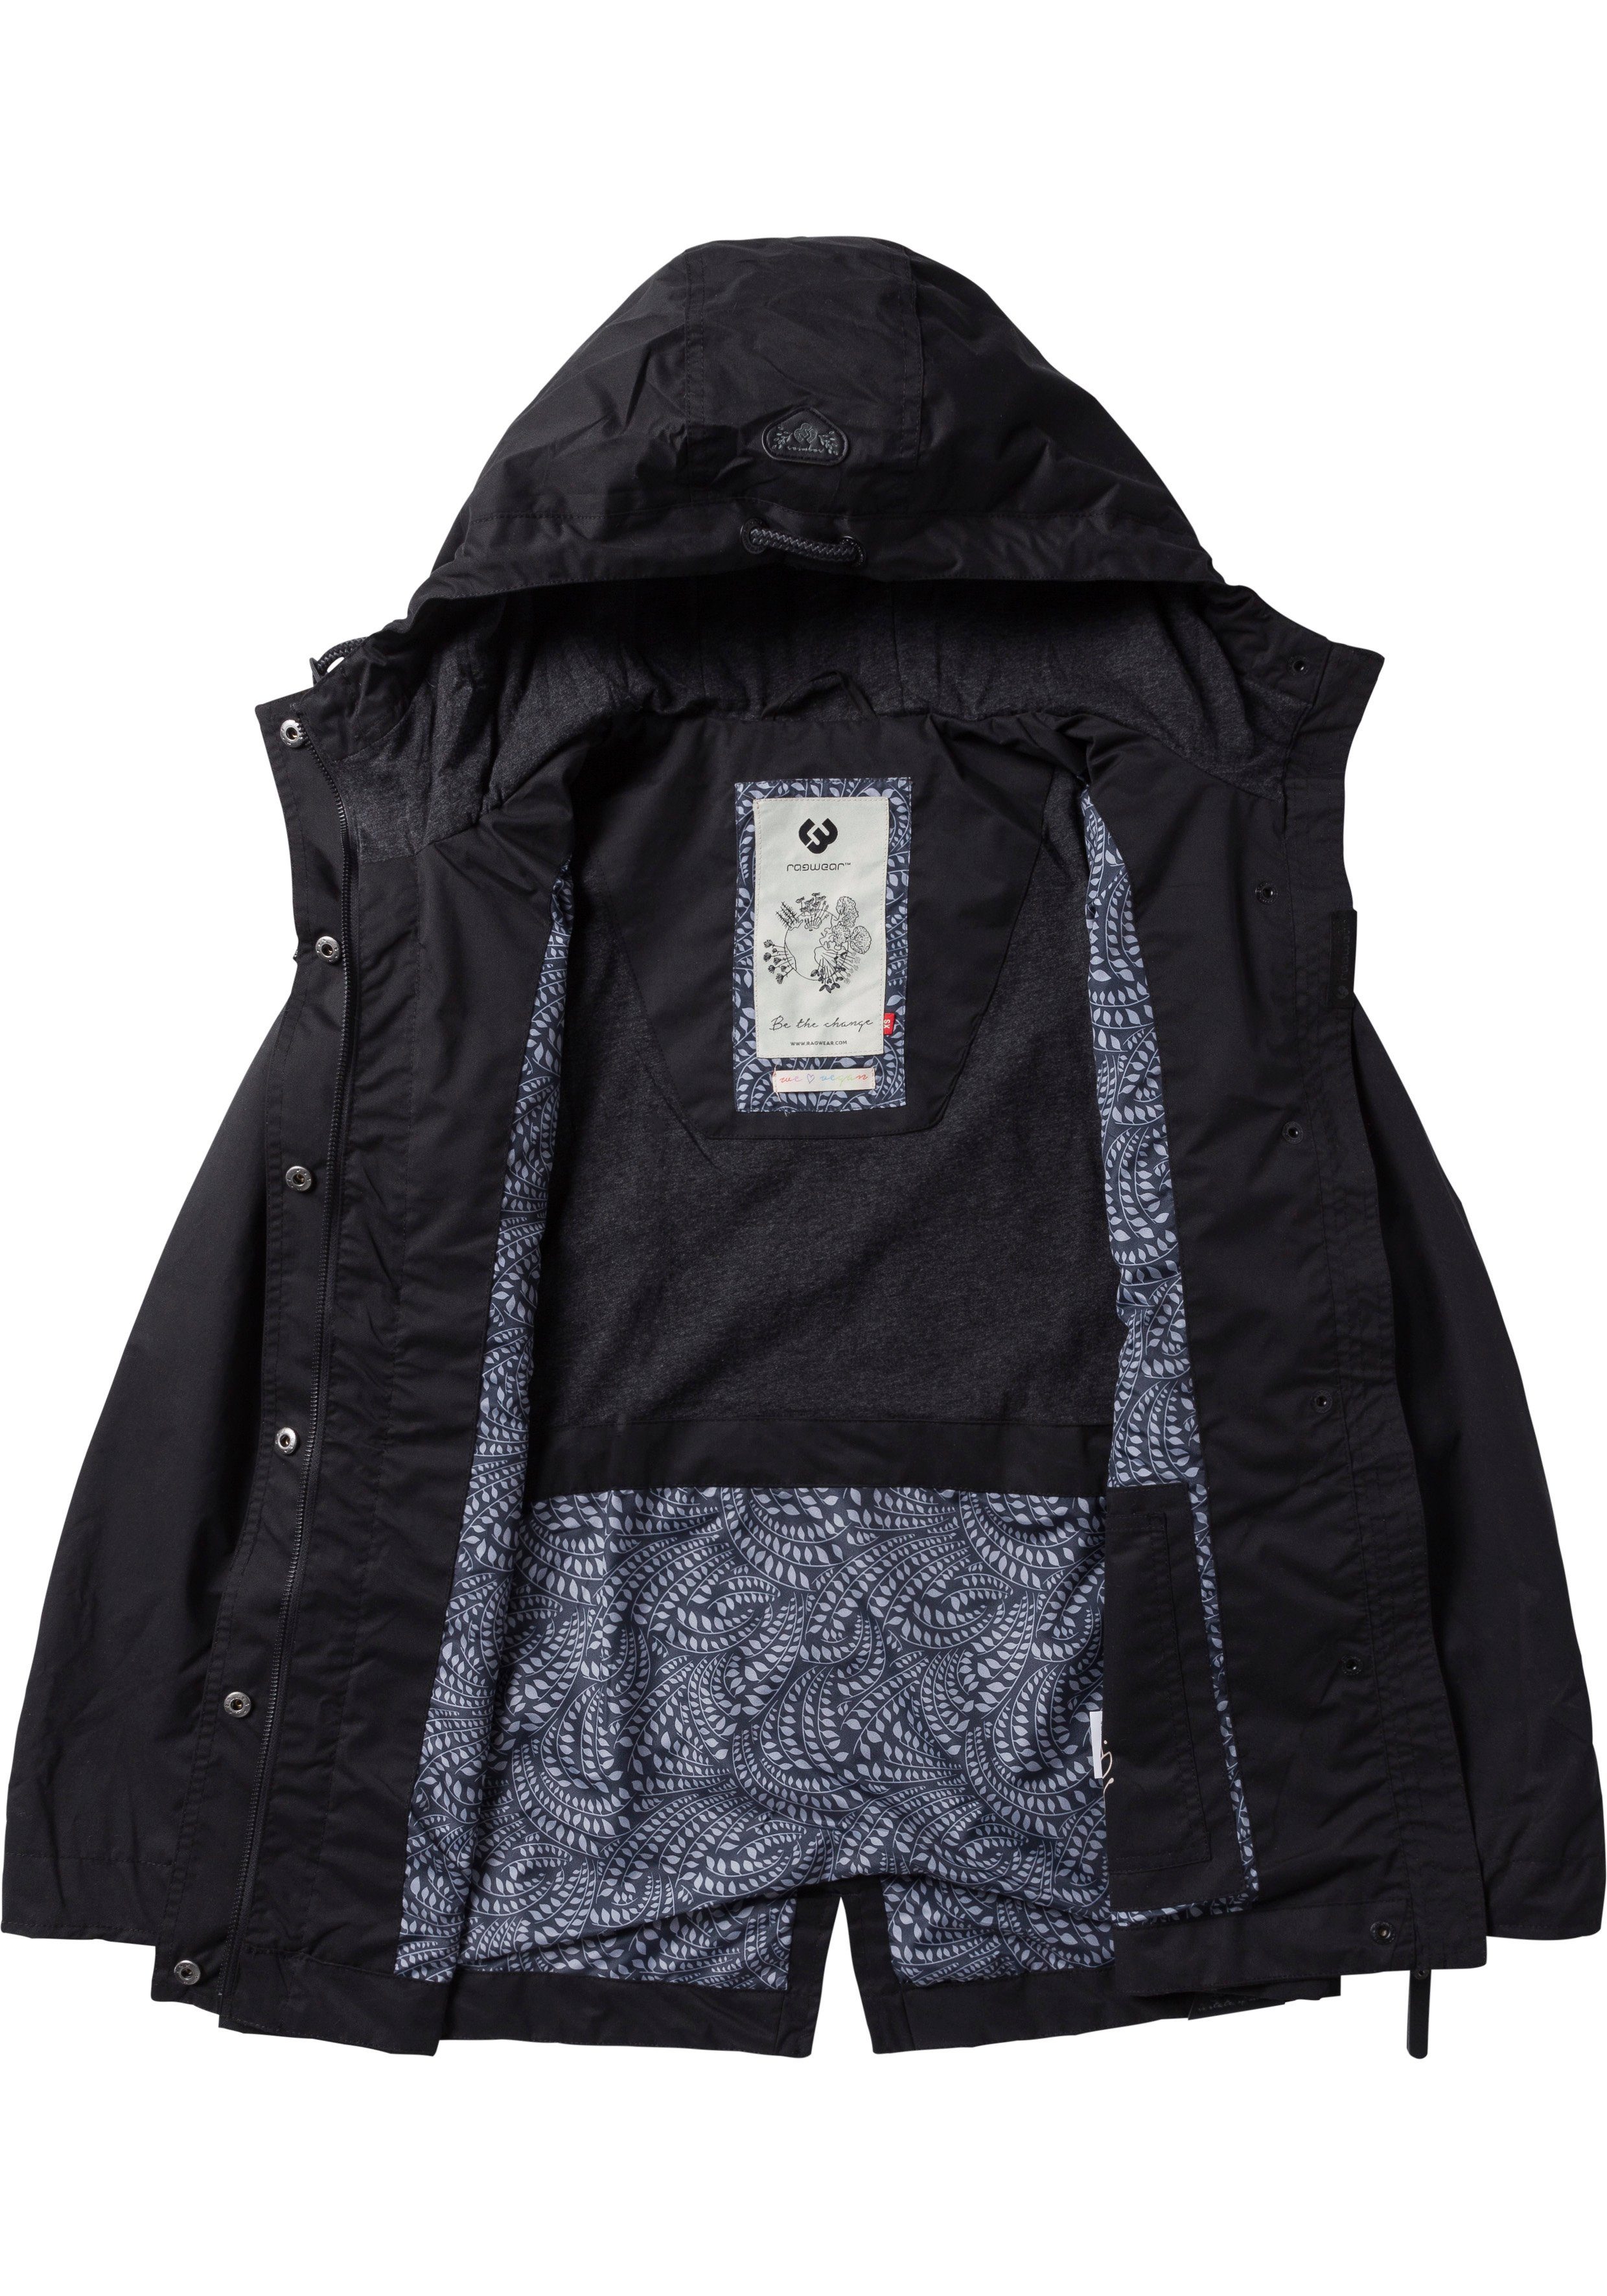 Ragwear stylische Funktionsjacke 1010 Waterproof fabric LENCA black Übergangsjacke